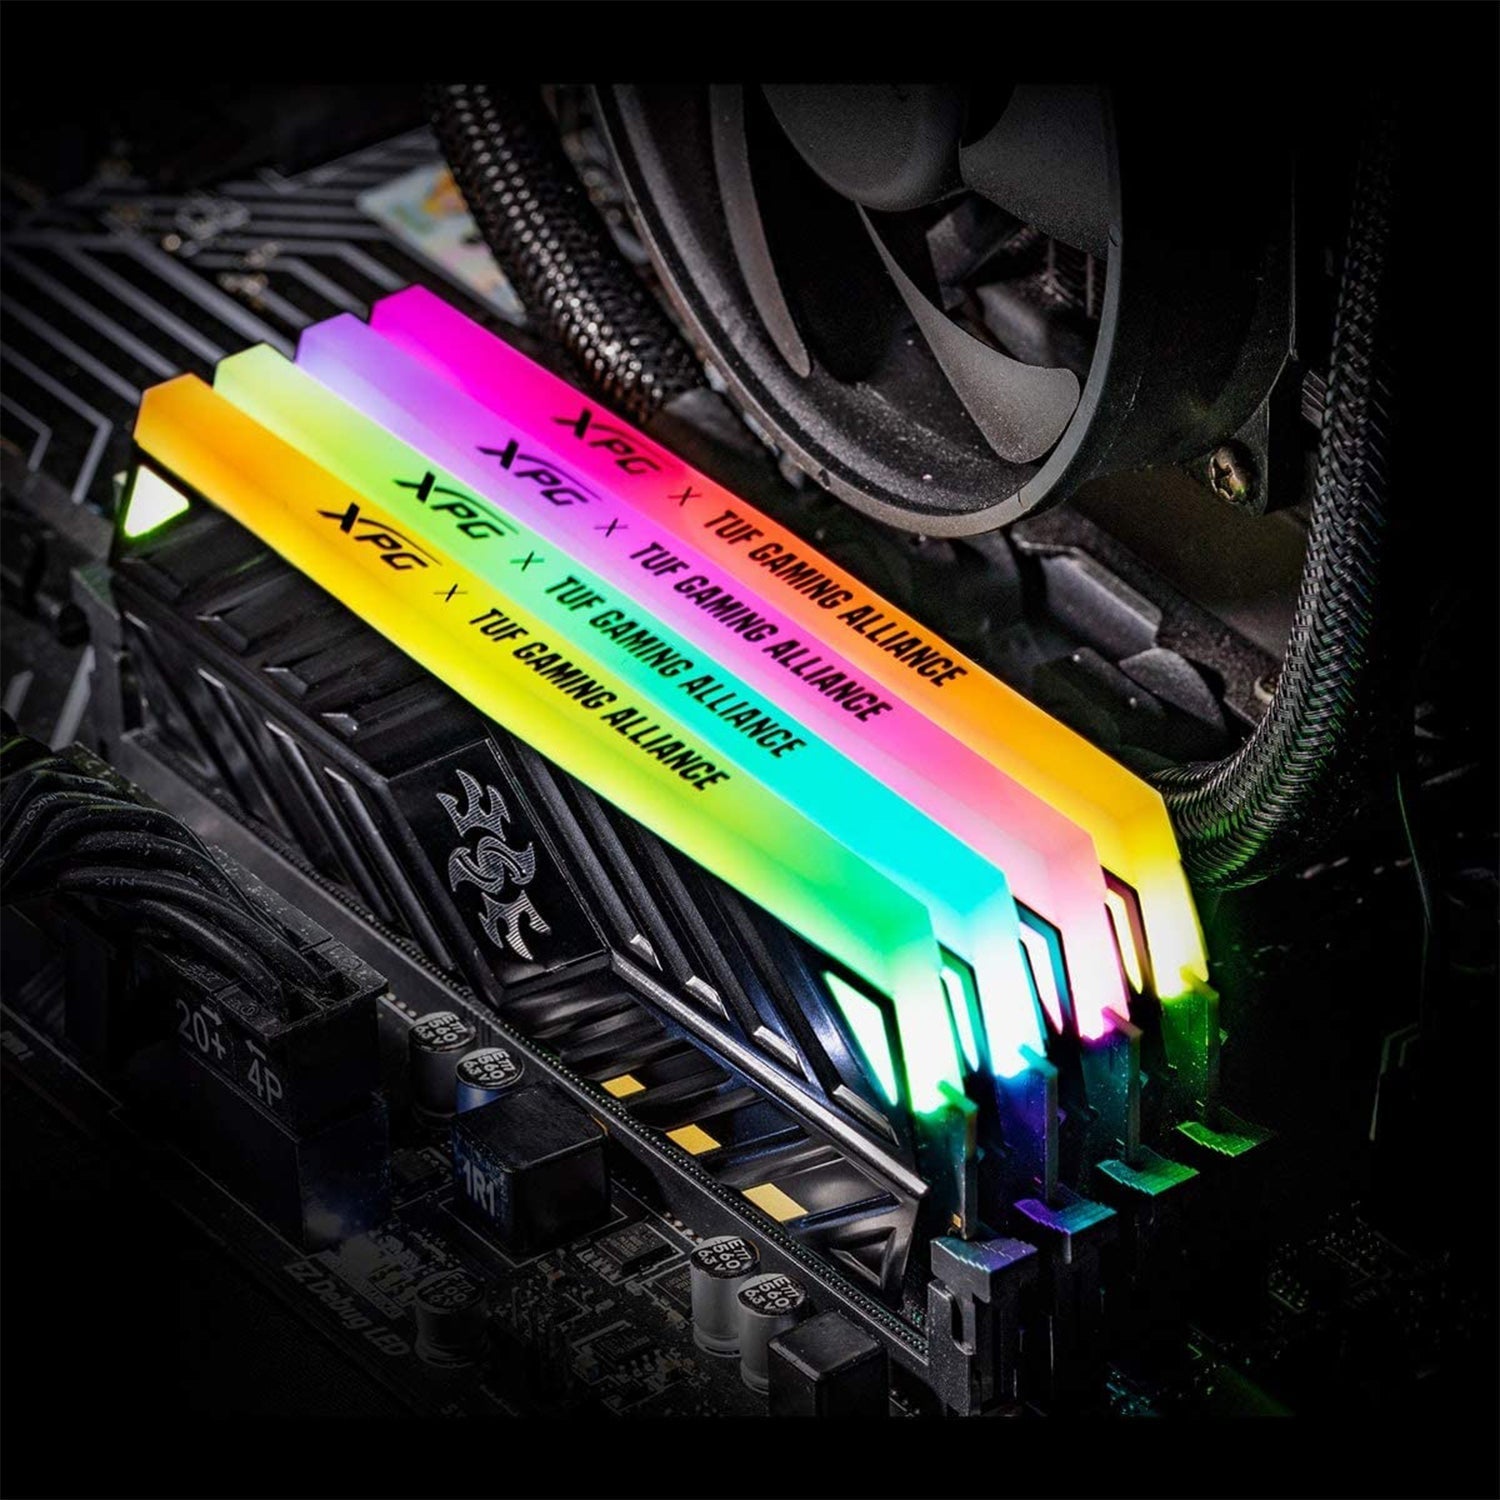 XPG Spectrix D41 8 GB RAM DDR4